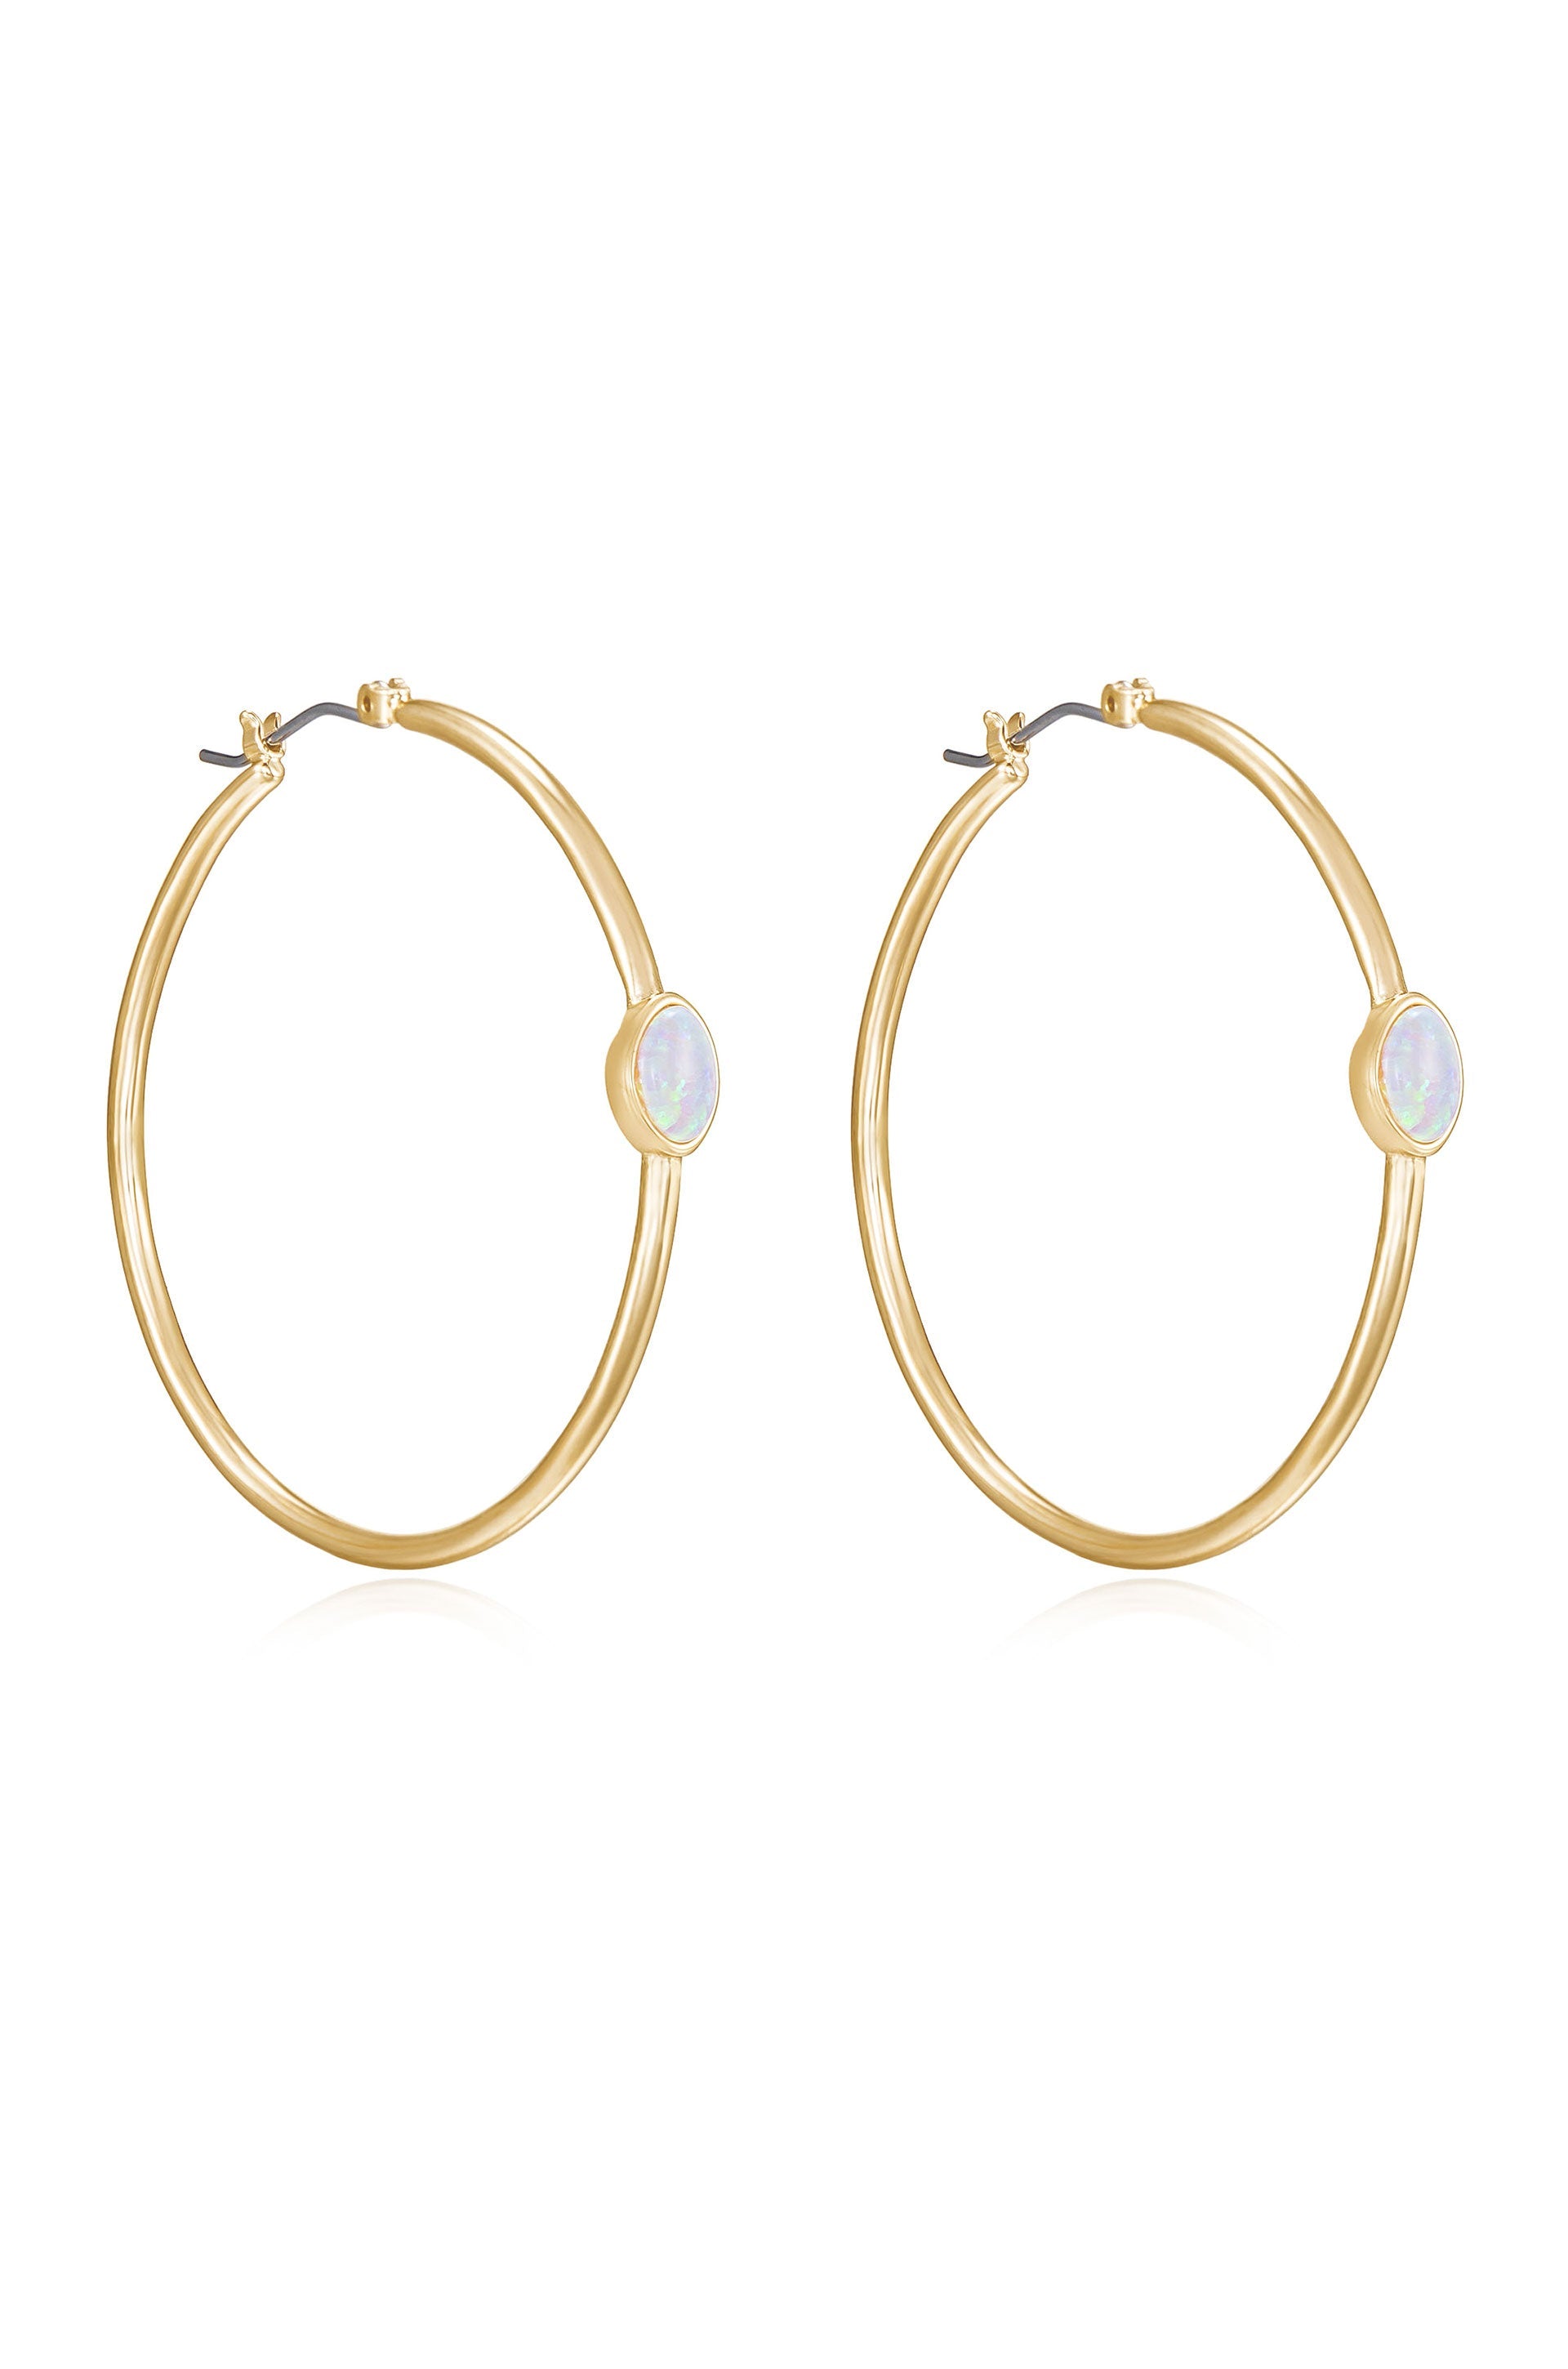 A Drop of Opal Hoop Earrings - Premium Earrings from Ettika - Just $60! Shop now at Tooksie